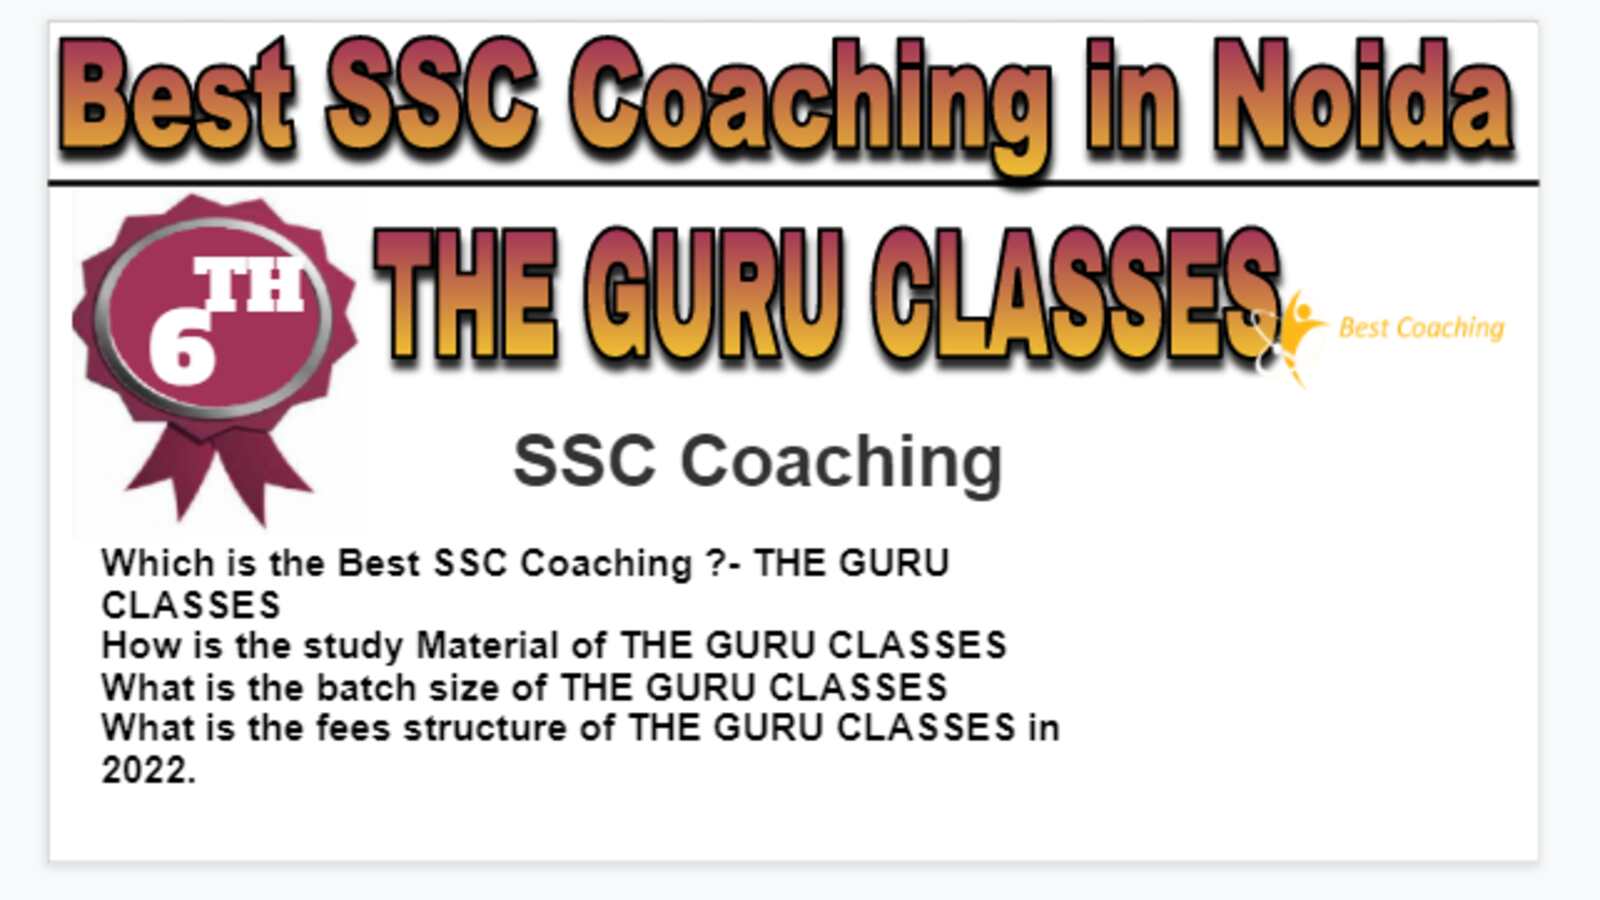 Rank 6 Best SSC Coaching in Noida